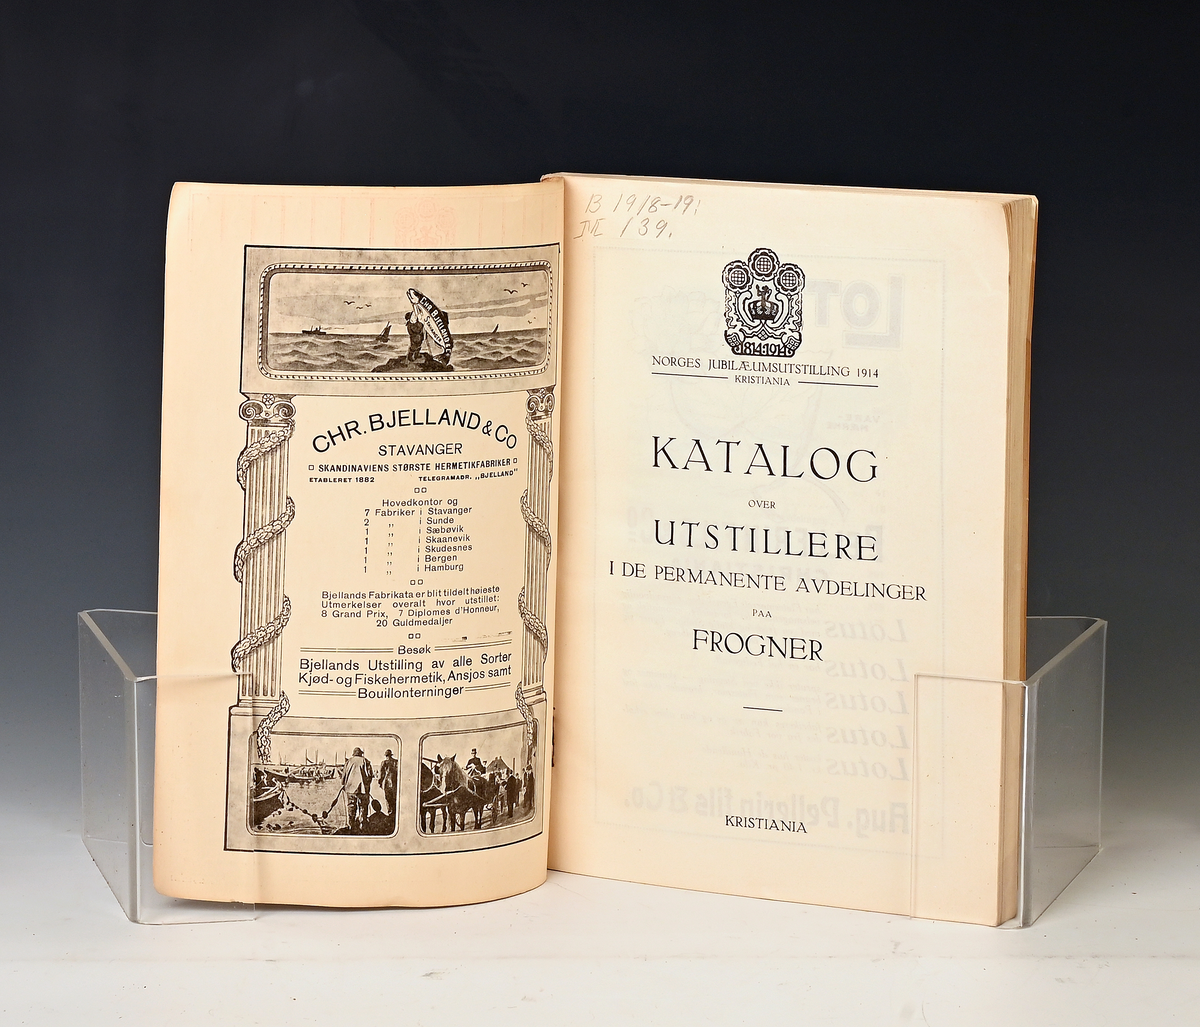 Prot: Katalog over utdstillere i de permanente avdelinger paa Frogner.
